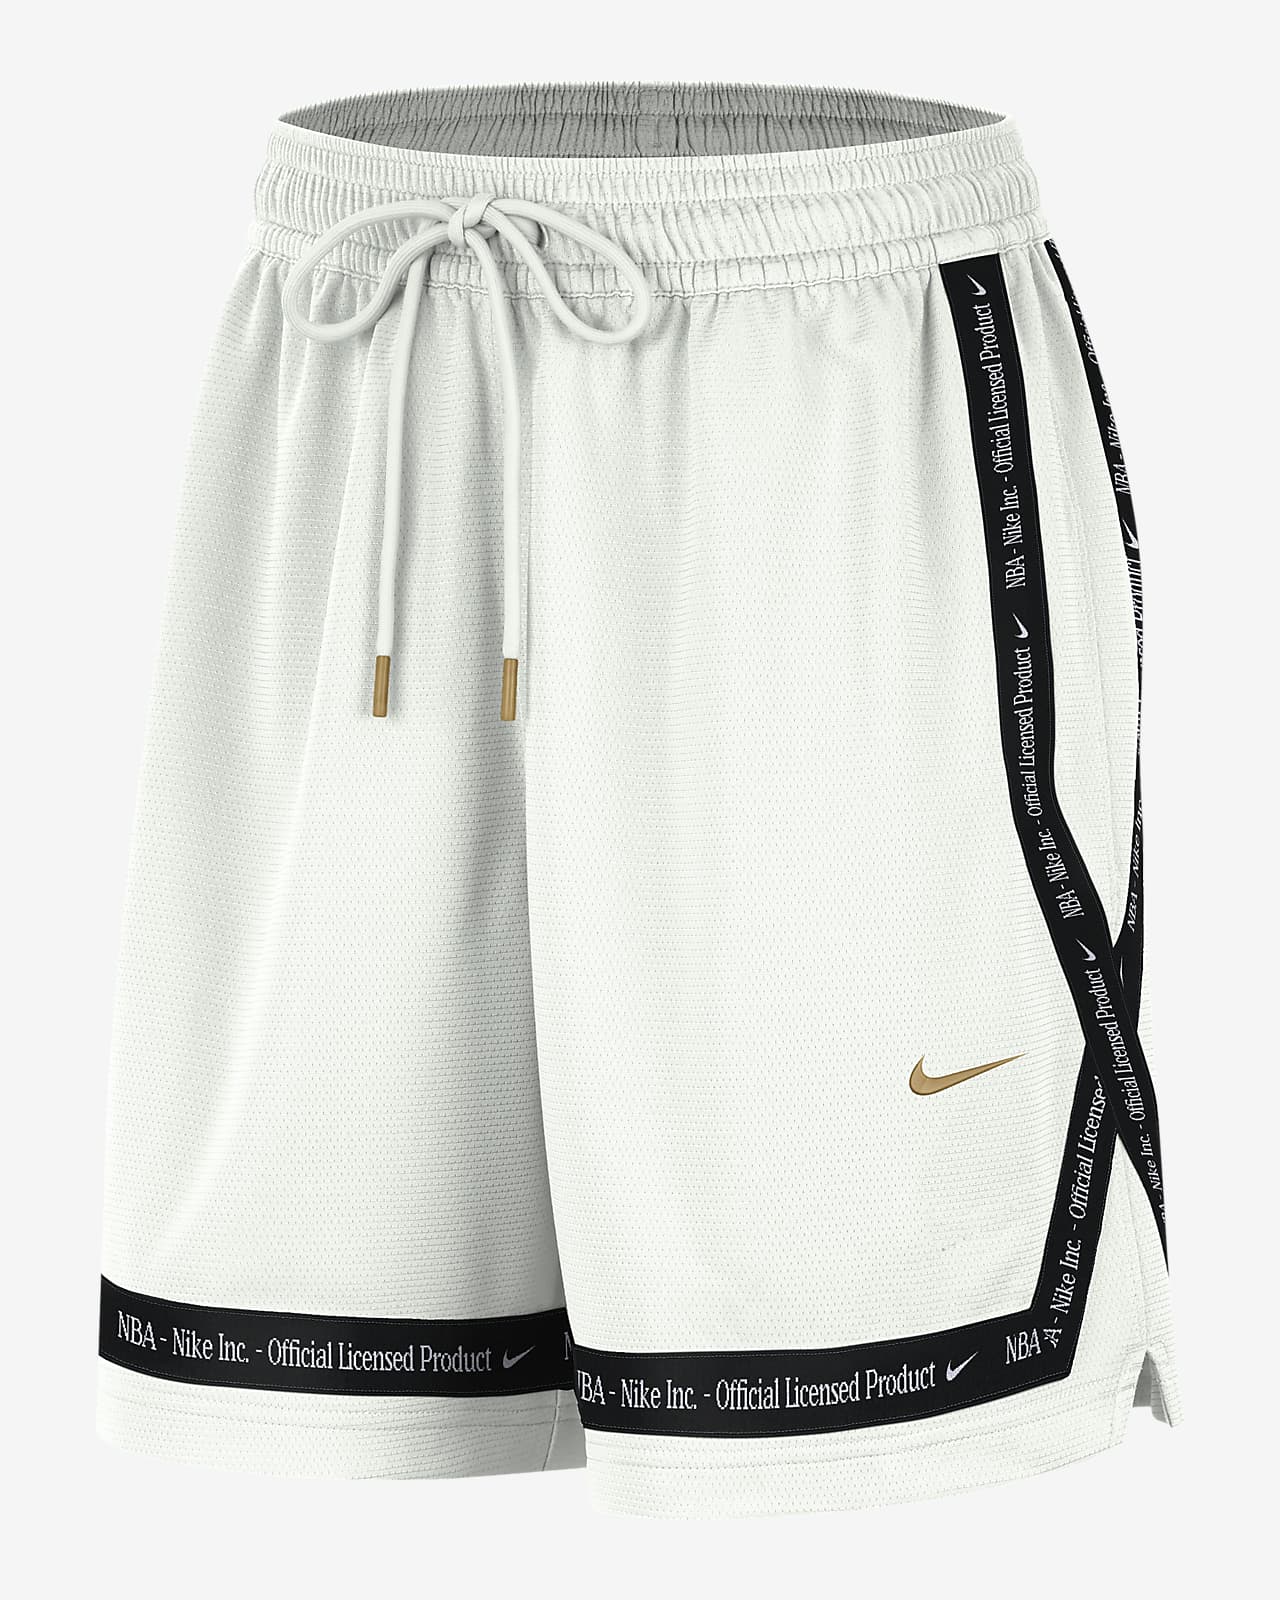 Shorts Nike Dri-FIT de la NBA con gráfico para mujer Team 31 Fly Crossover